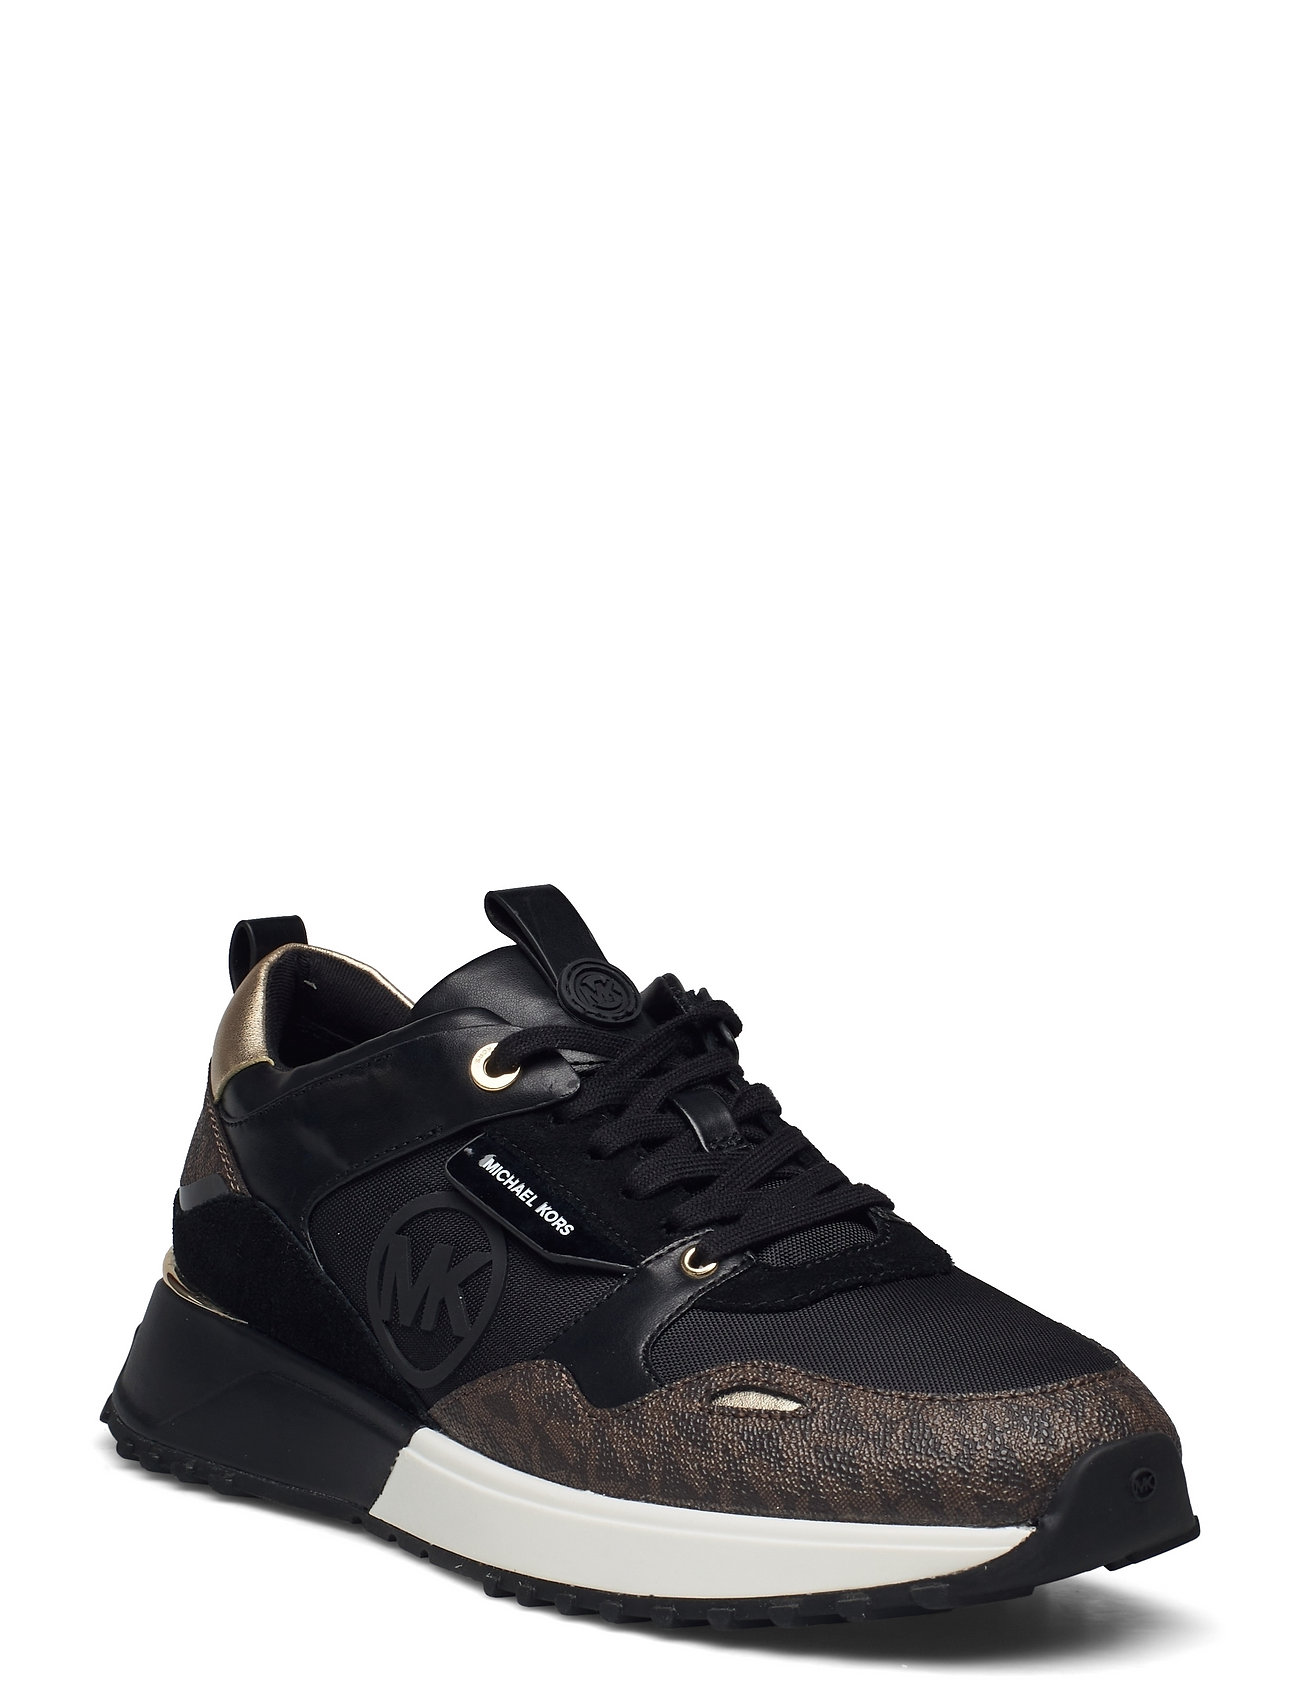 Michael Kors Cotton Fashion Sneakers